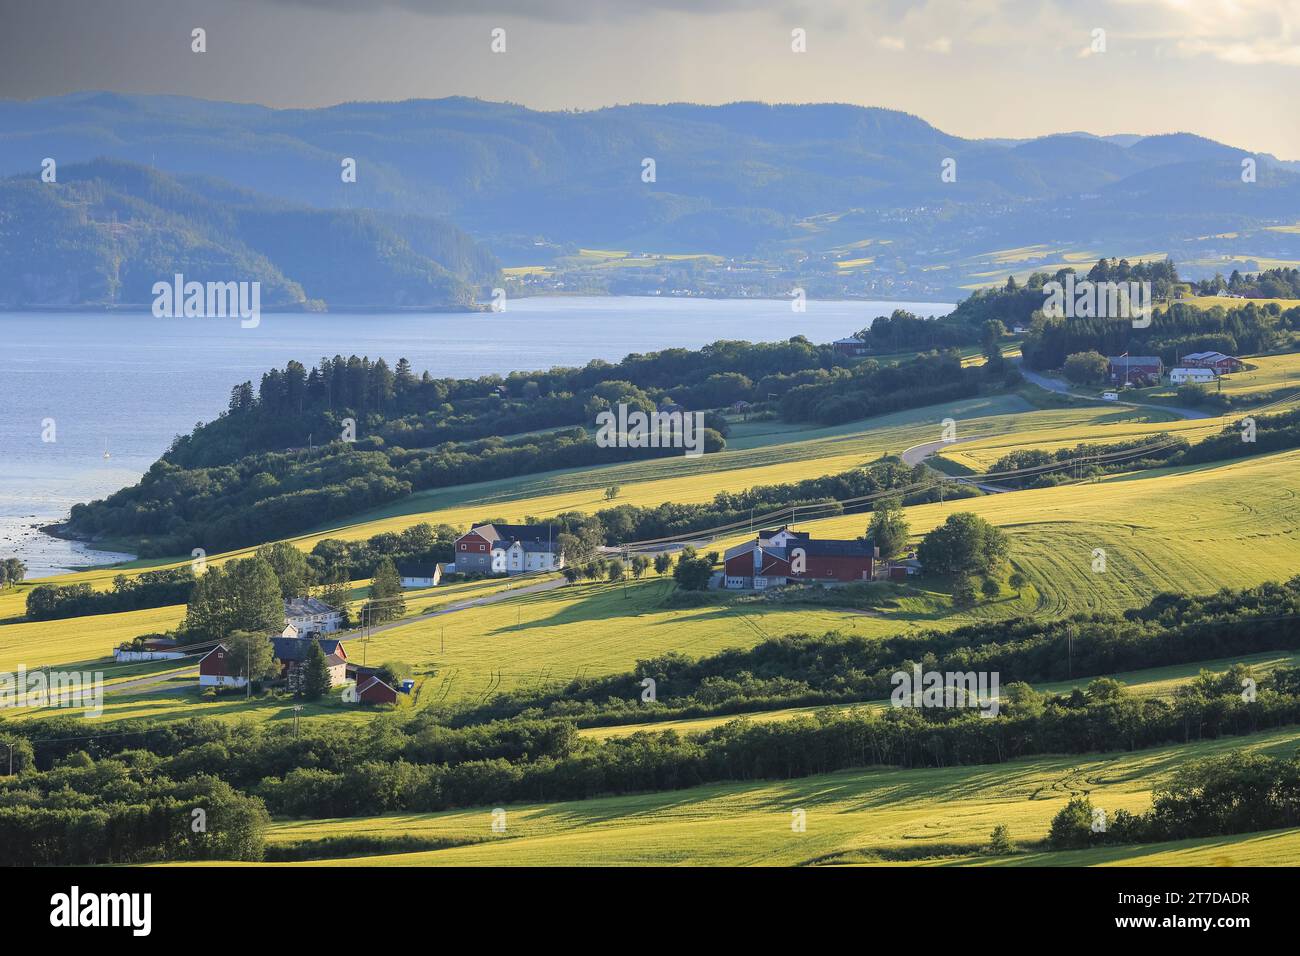 Vista aerea dell'area agricola Byneset e del fiordo di Trondheim vicino alla città norvegese di Trondheim Foto Stock